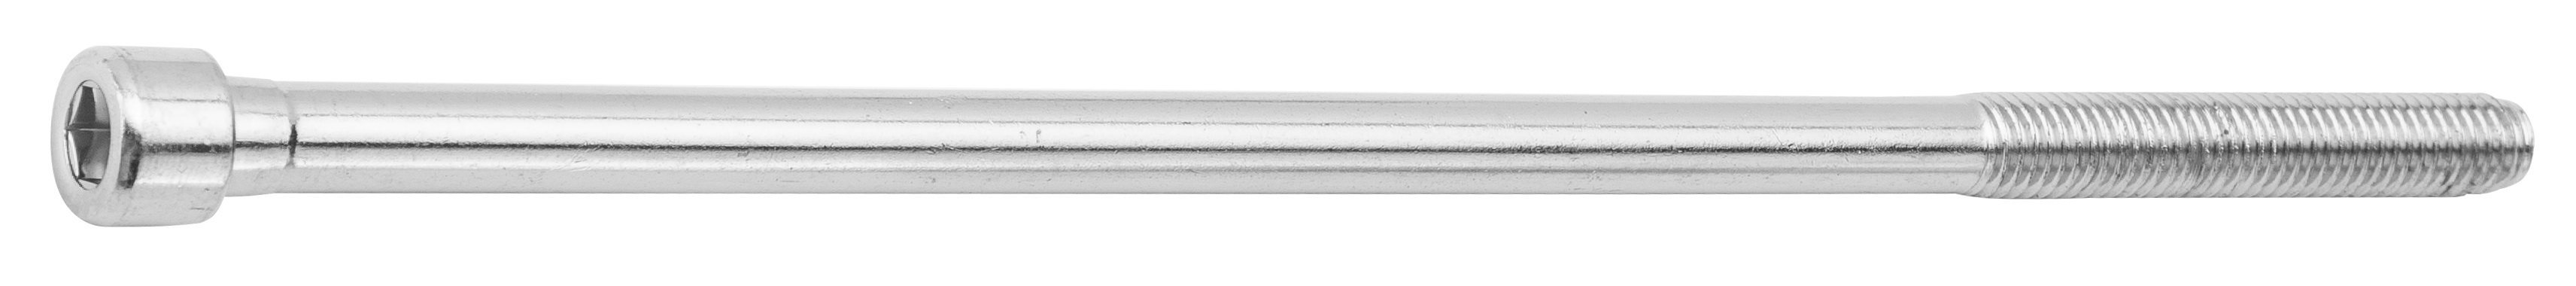 Болт выноса руля сталь (без гайки), 160 мм, под шестигранник